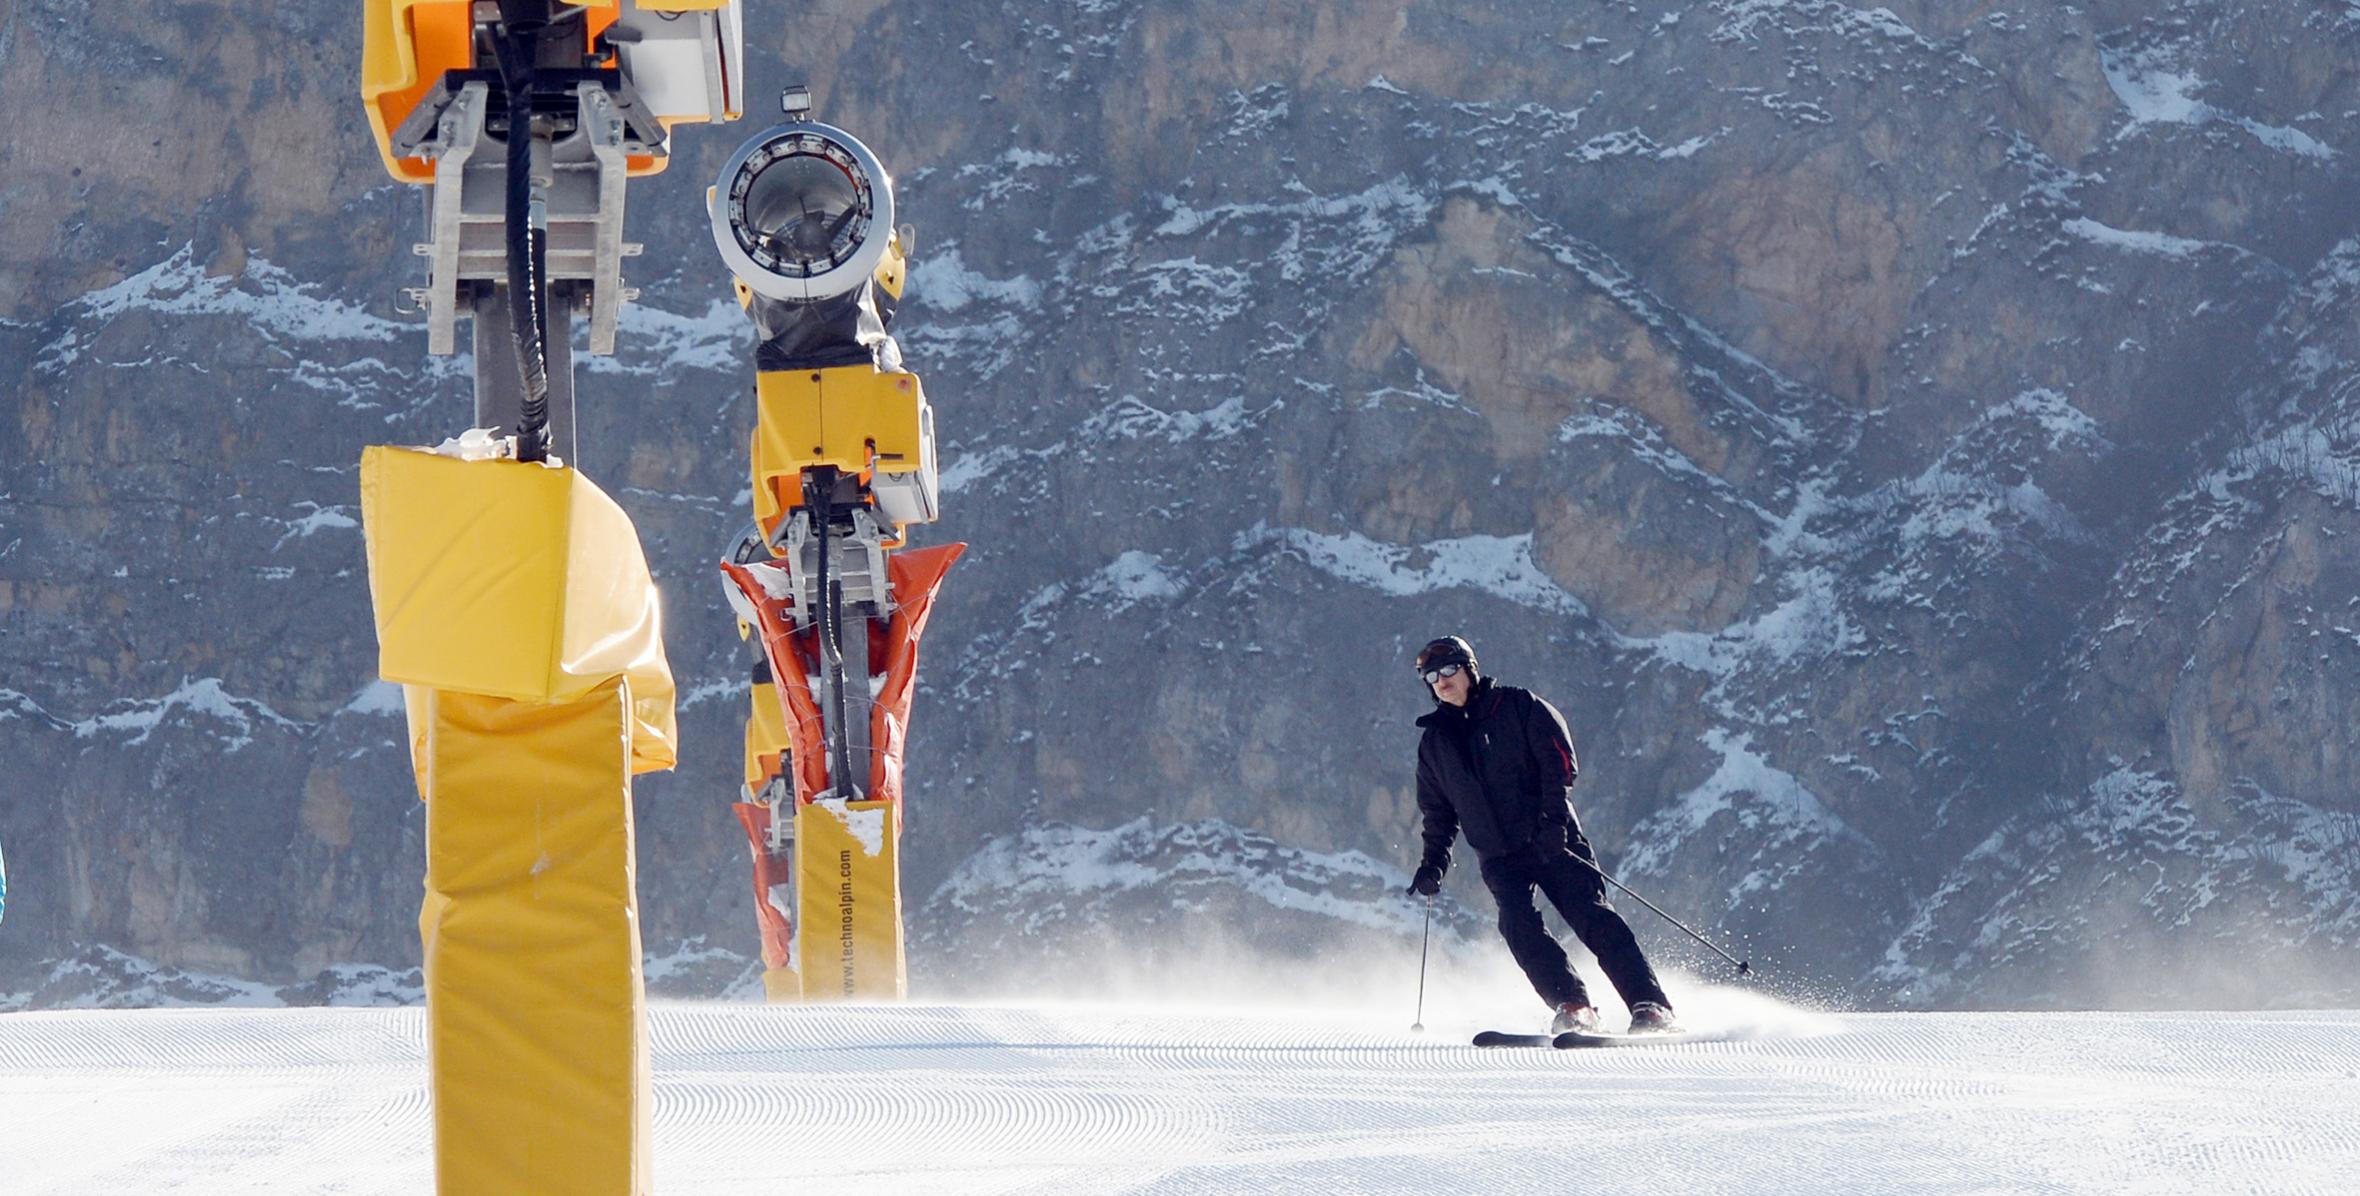 Ильхам Алиев принял участие в открытии канатной дороги номер 1 и горнолыжного спуска зимне-летнего туристического комплекса «Шахдаг»